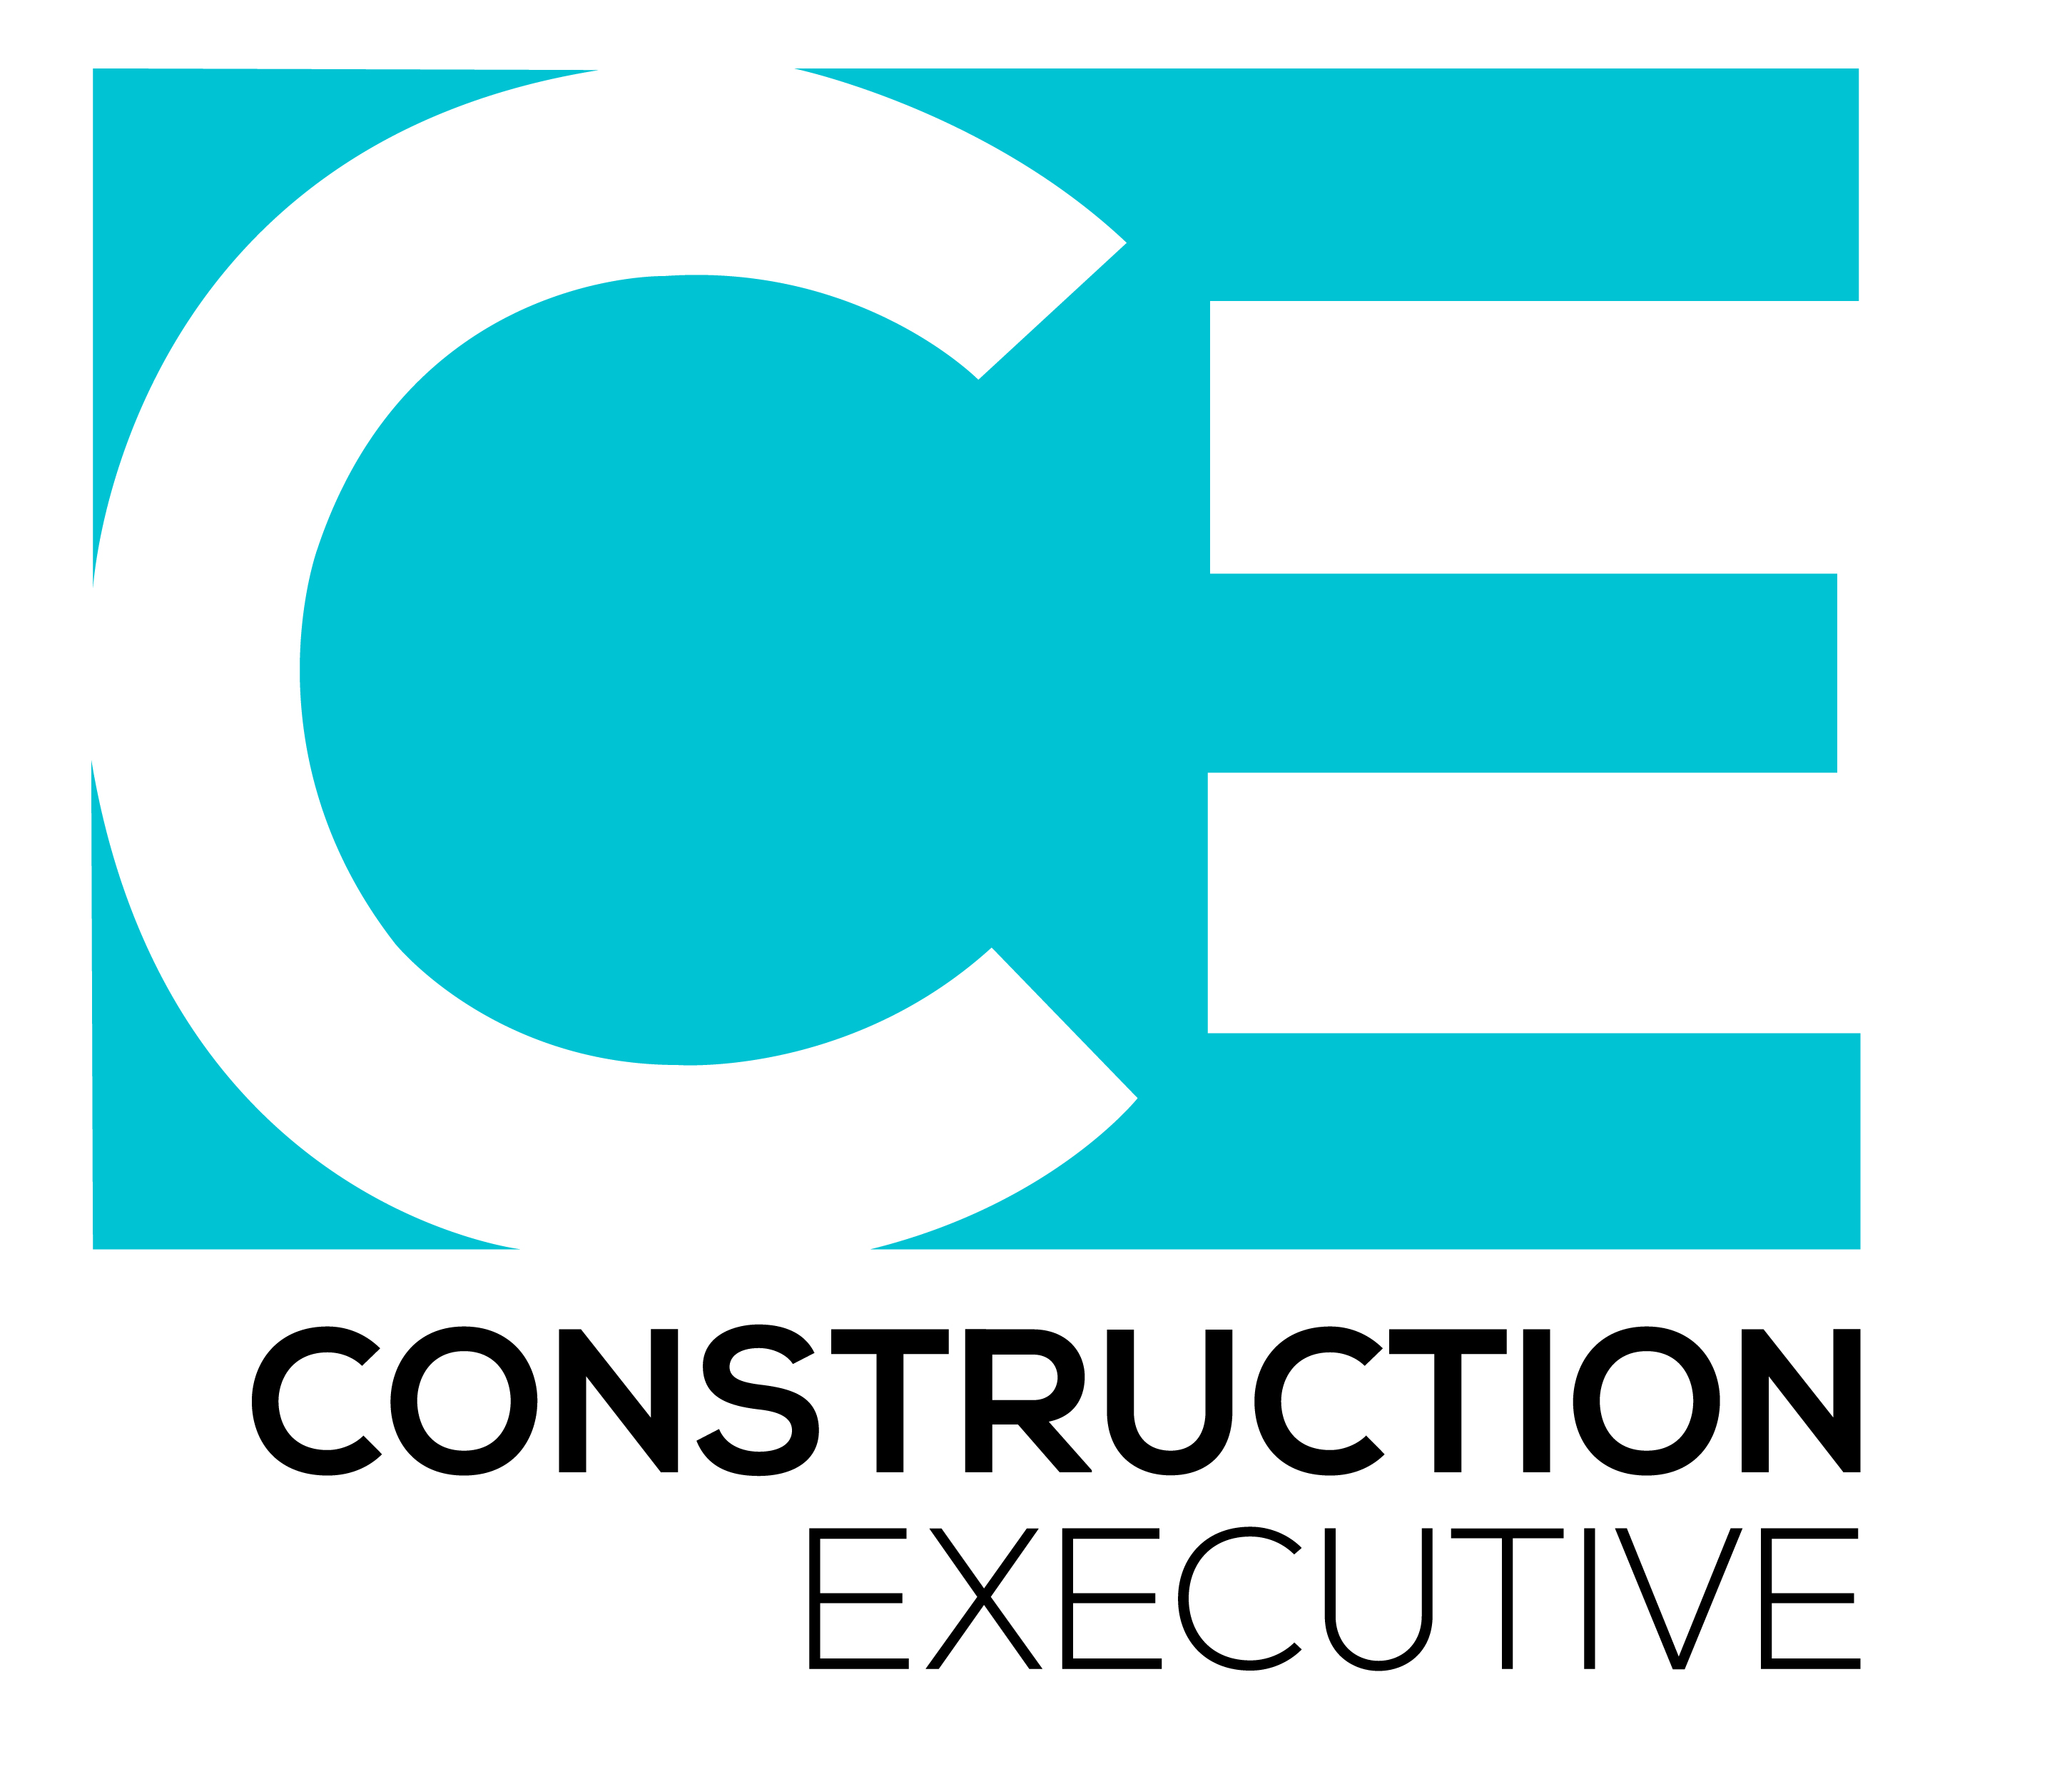 Construction Executive